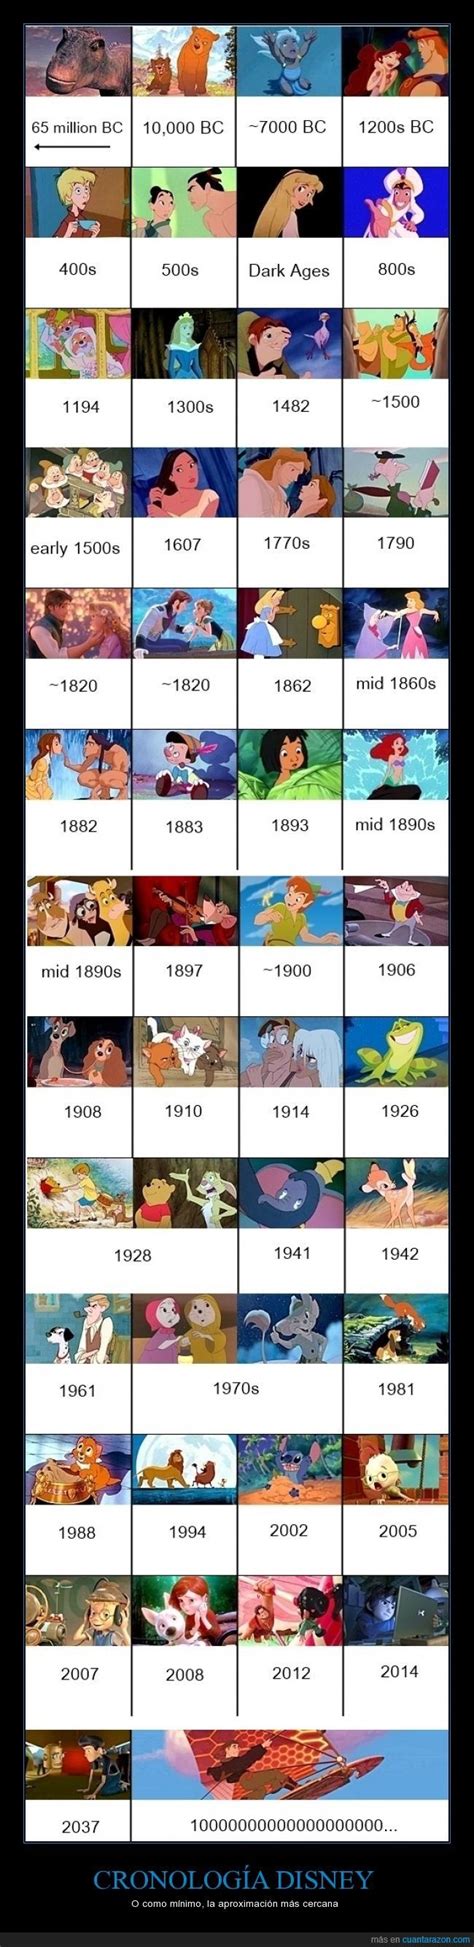 Poniendo Orden A La Cronología De Disney Filmes Da Disney Frases Da